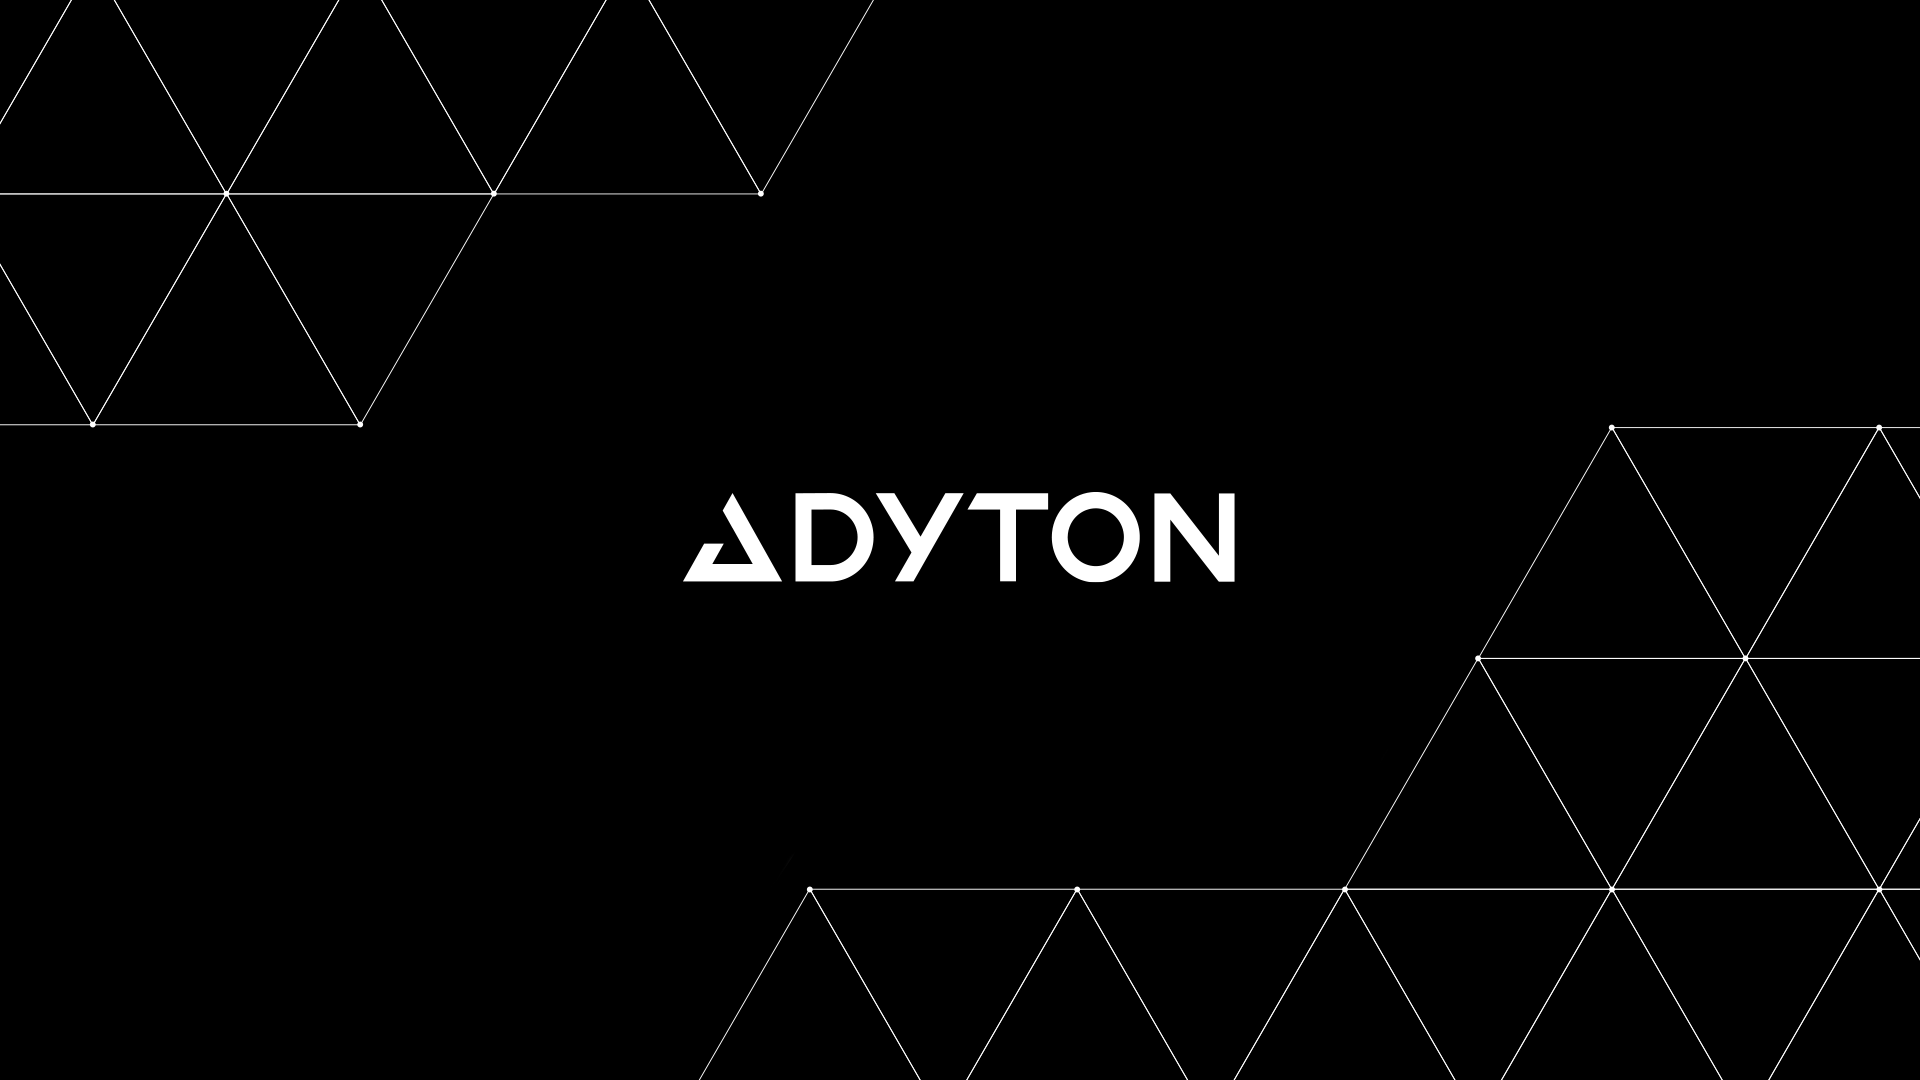 Adyton_logos2